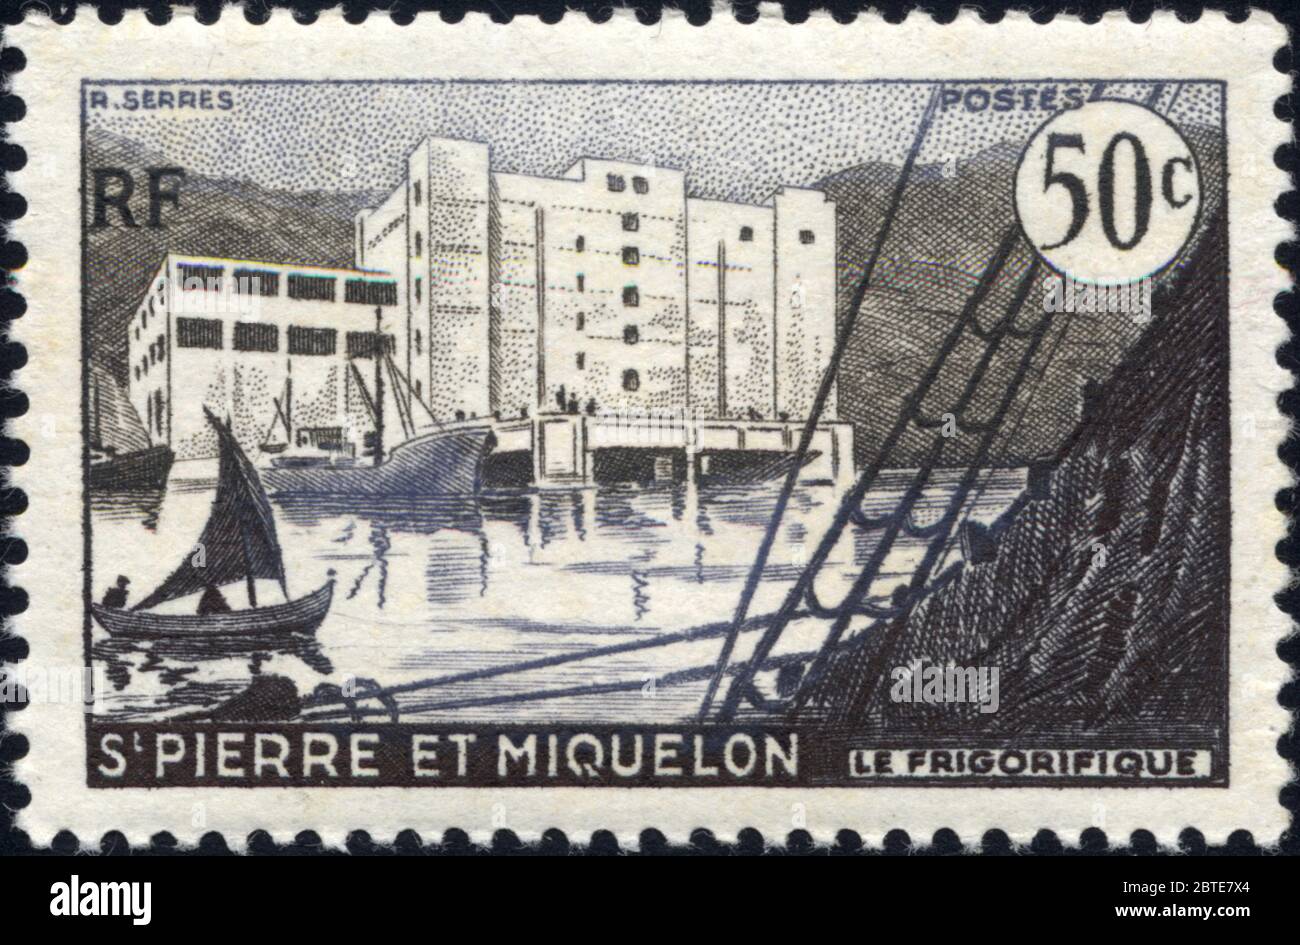 Le frigorifique. St Pierre et Miquelon. RF .R. Serres. Postes. 50c. Stock Photo